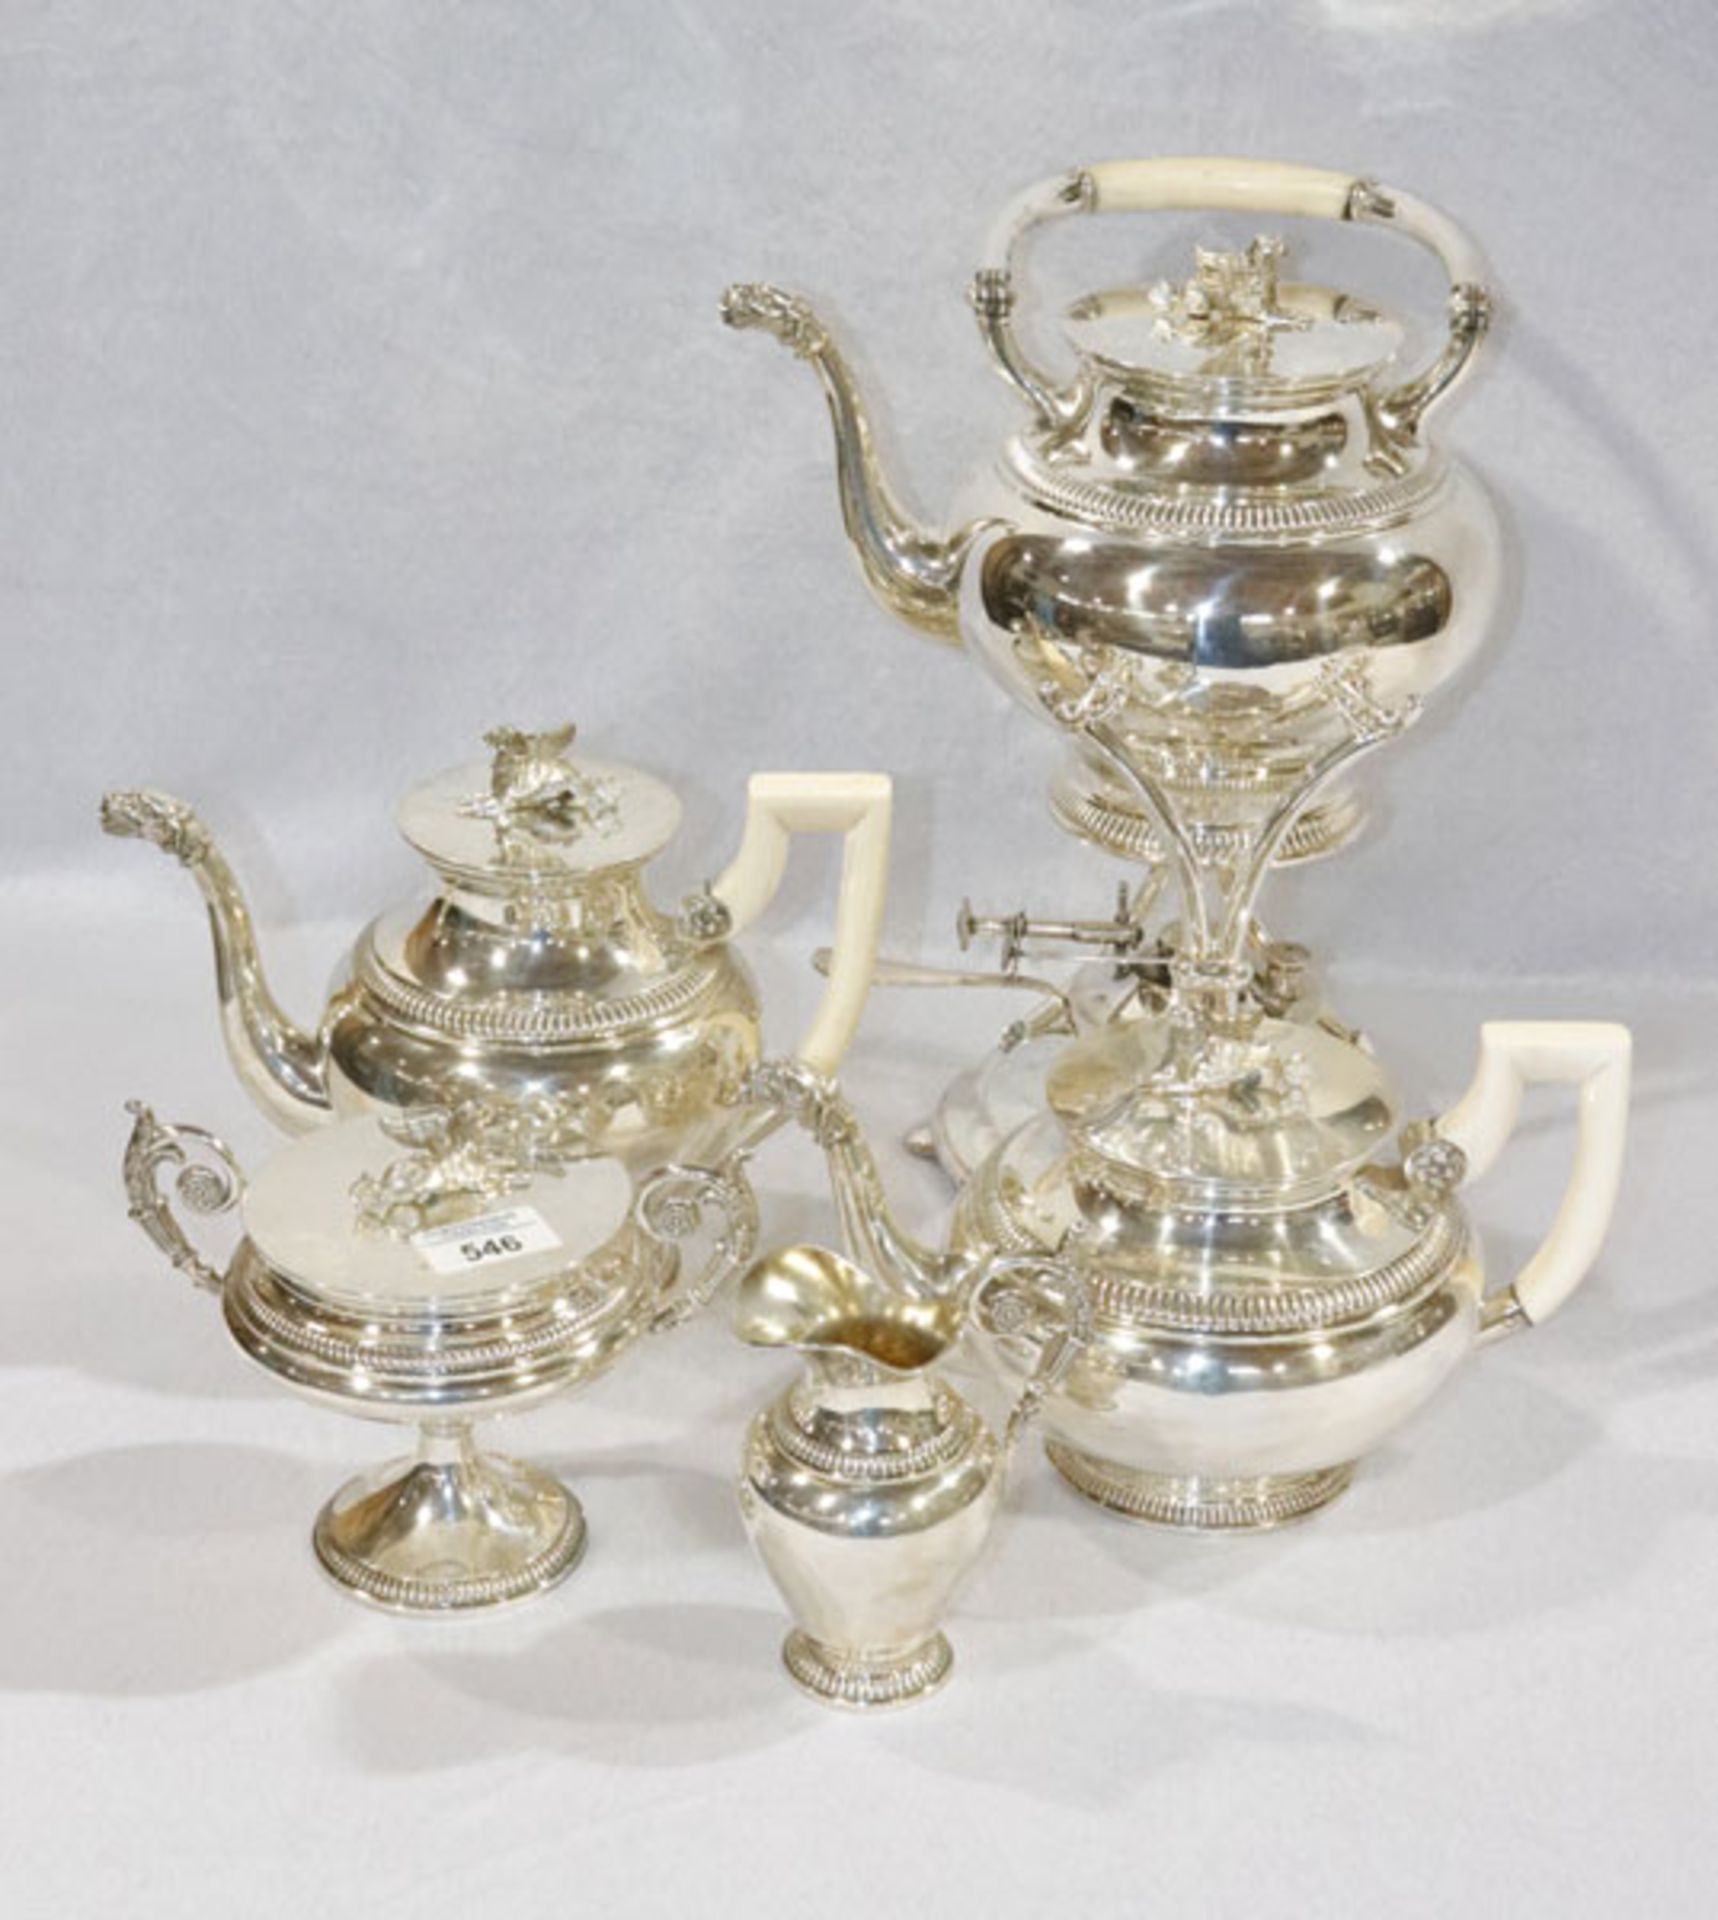 Dekorative Silber Kaffee- und Teekanne, Teekanne auf Stövchen, alles mit Beingriffen, Milch und